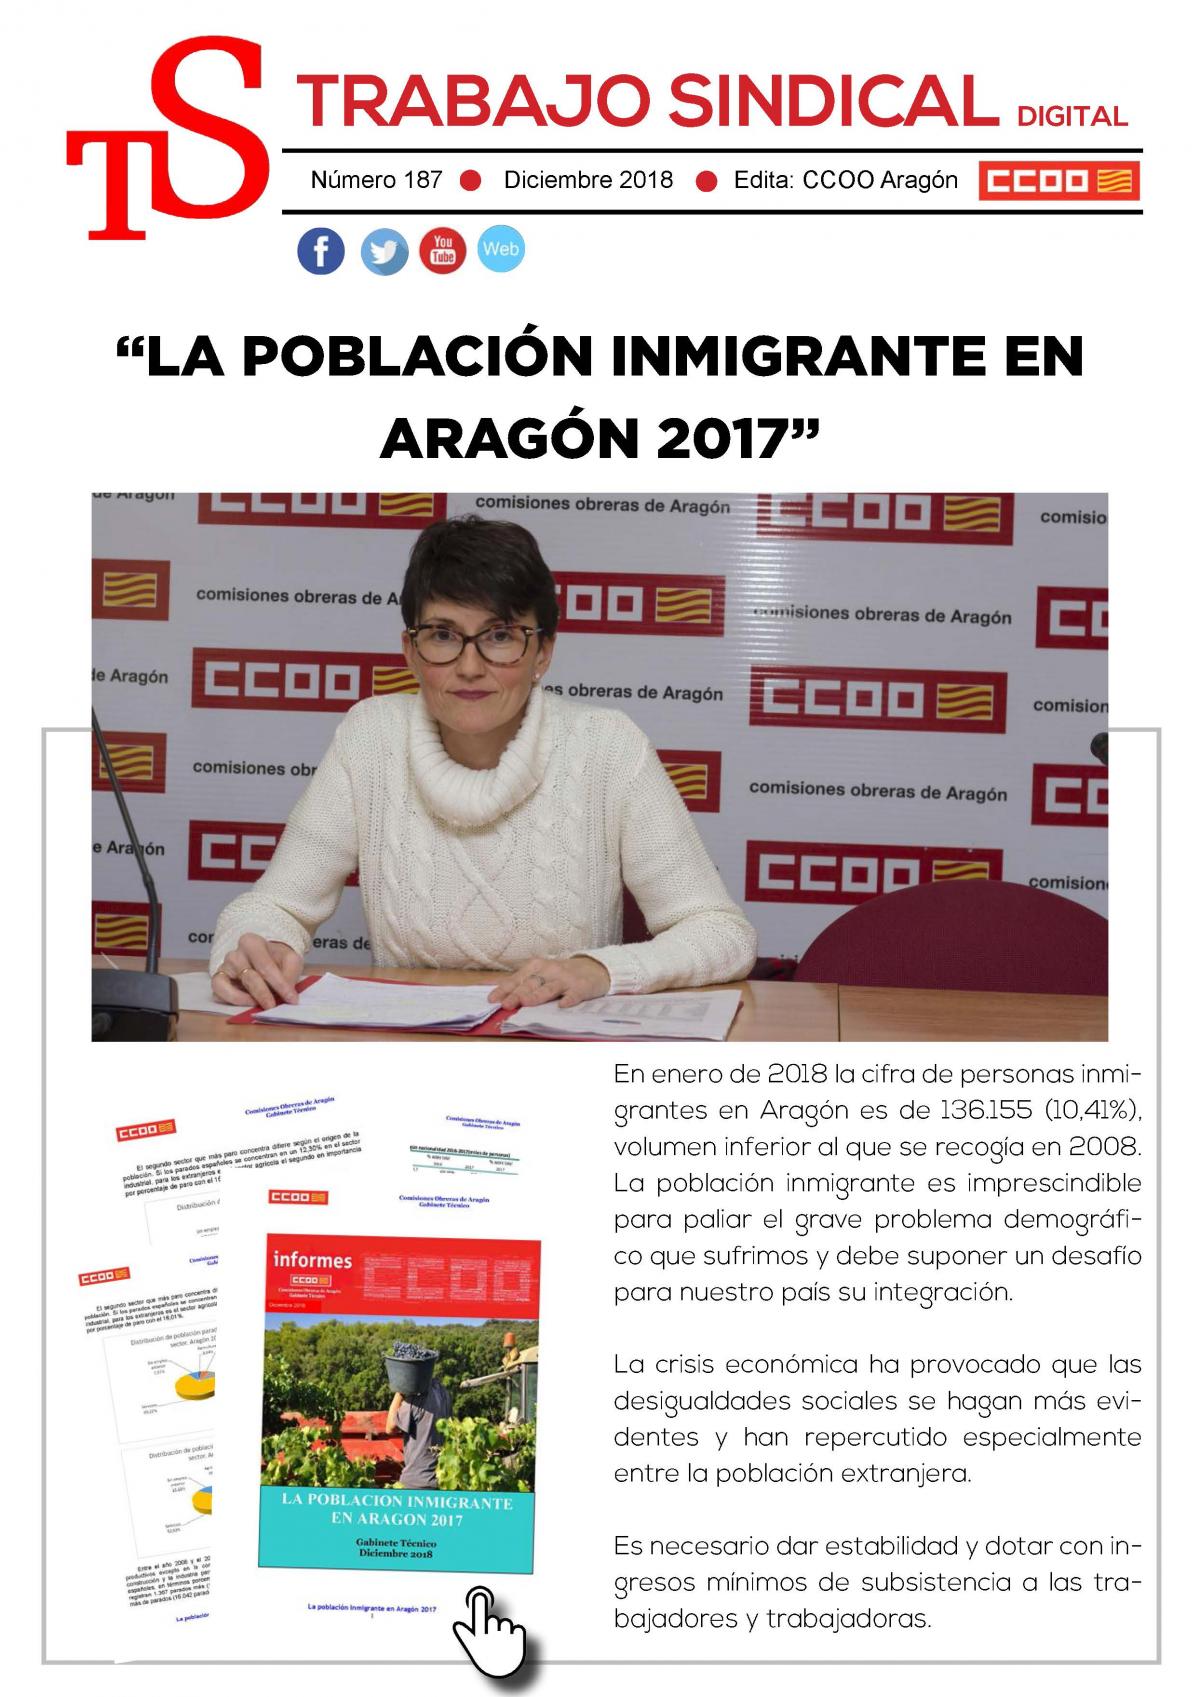 Trabajo Sindical digial 187. La poblacin inmigrante en Aragn 2017.